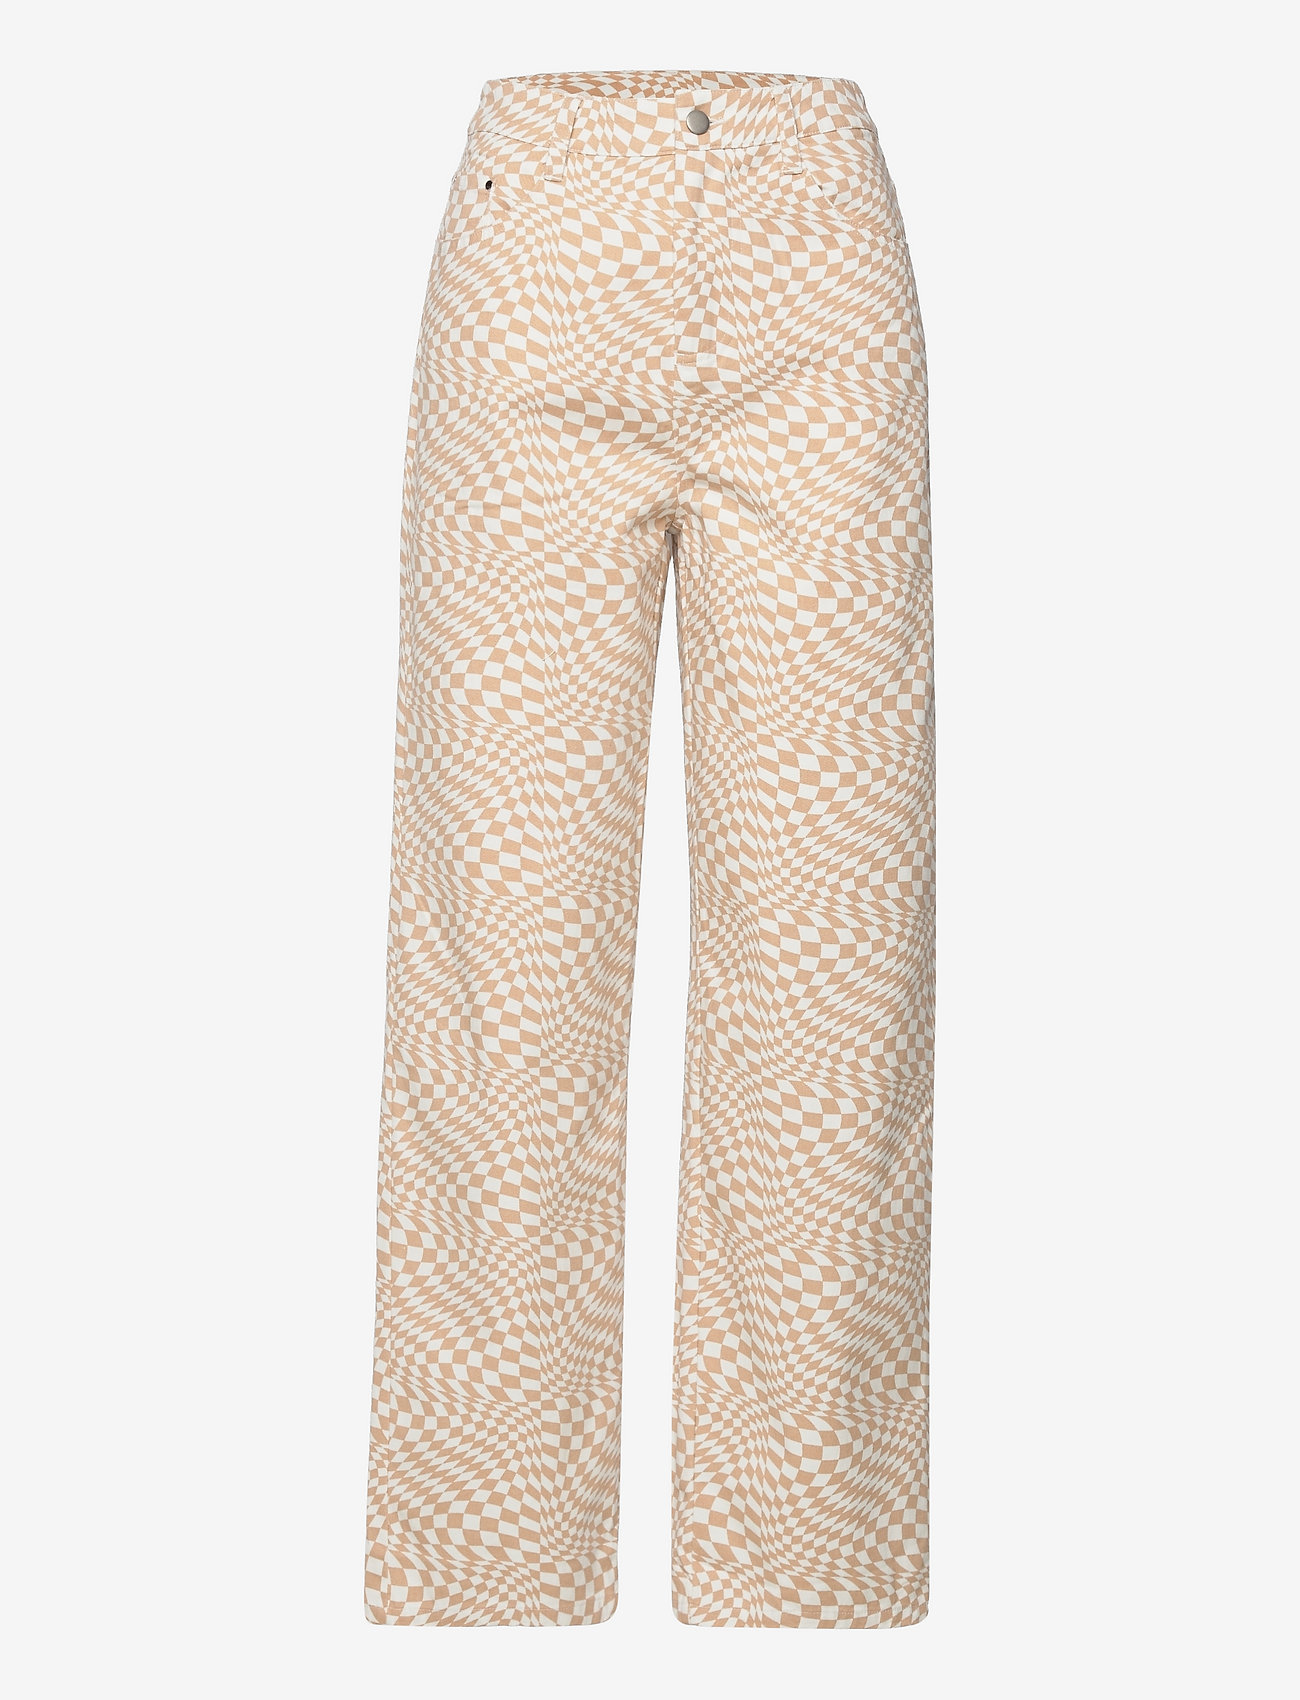 Barbara Kristoffersen by Rosemunde - Trousers - rette bukser - sand swirl check print - 0